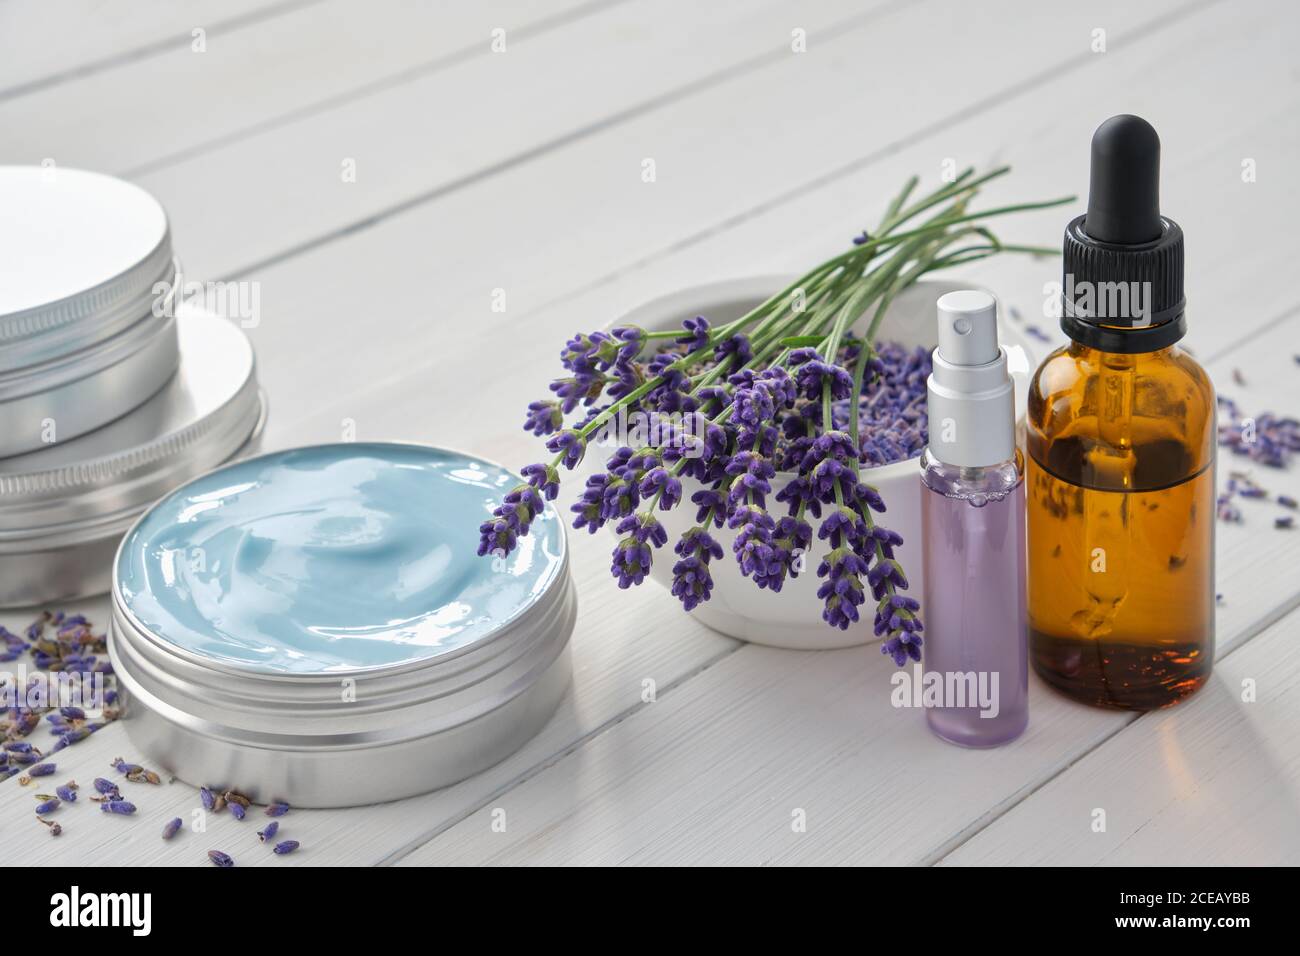 Natürliche Lavendelcreme, Lavendelblüten, Tropfflasche mit ätherischem Lavendelöl und parfümiertes Wasser oder Hydrolat in einer Sprühflasche. Stockfoto